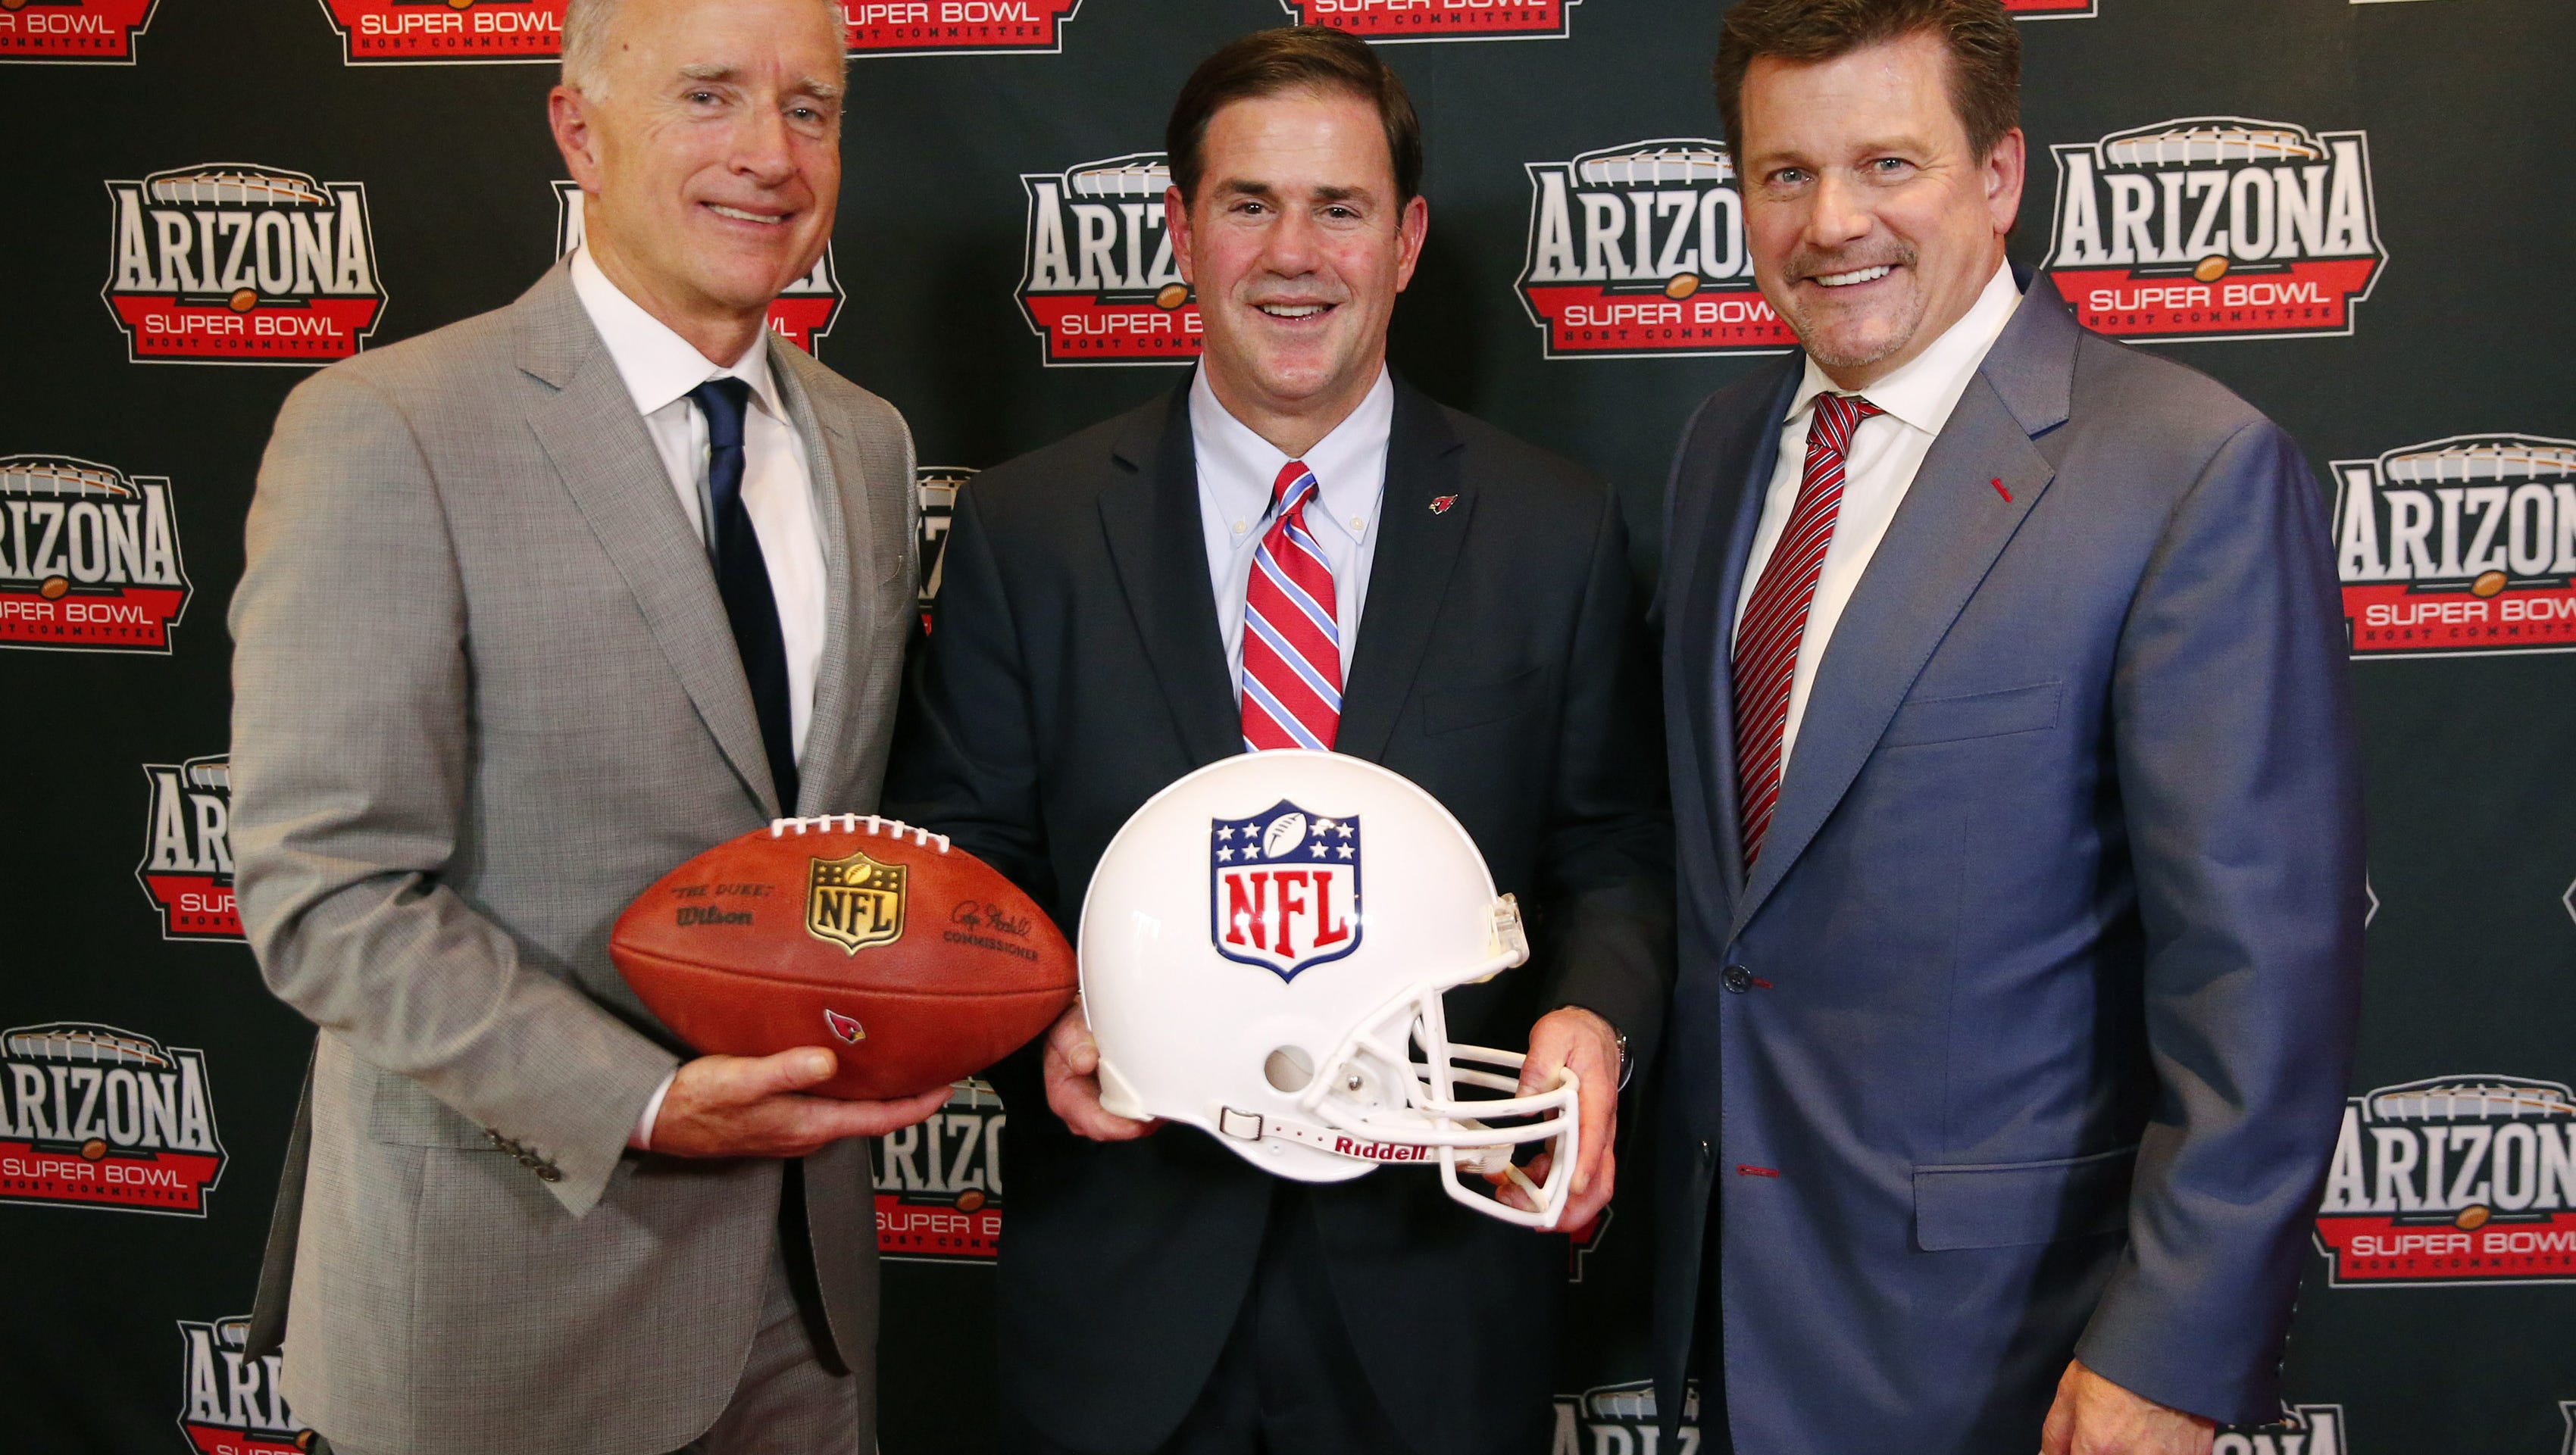 Will the NFL yank the 2023 Super Bowl if Arizona passes voter bills?